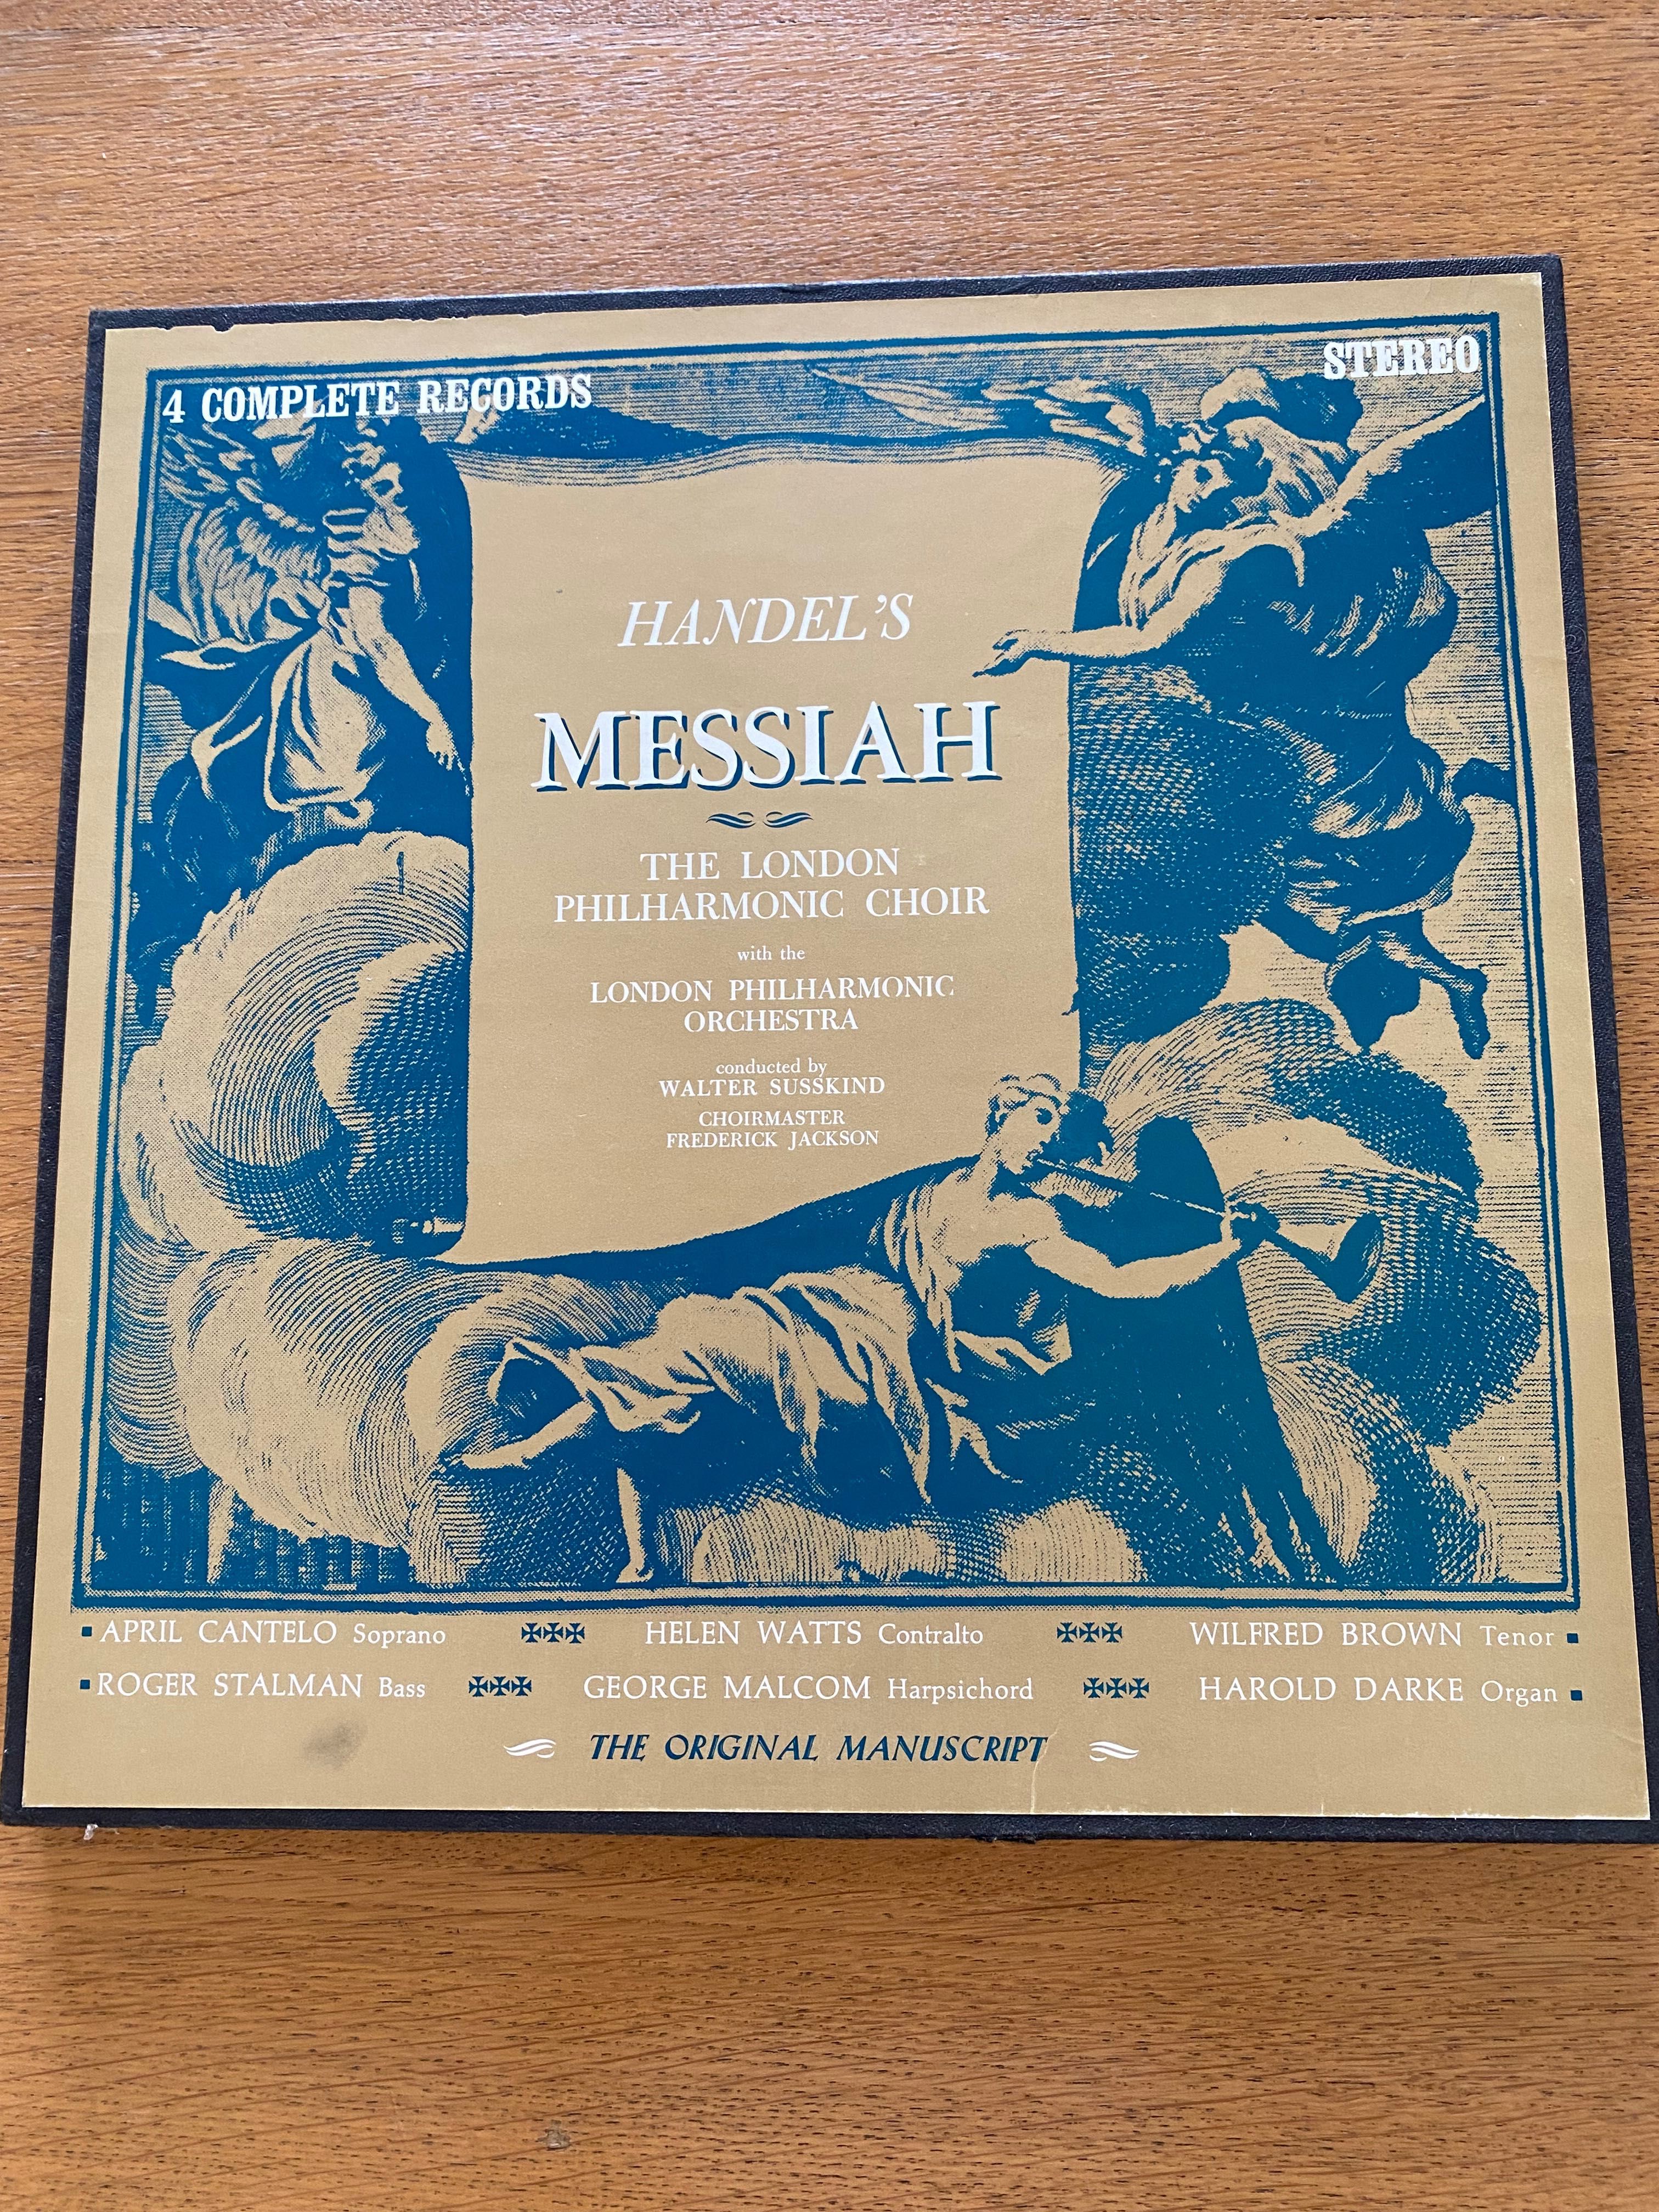 Handel’s Messiah caixa com 4 LP’s vinil